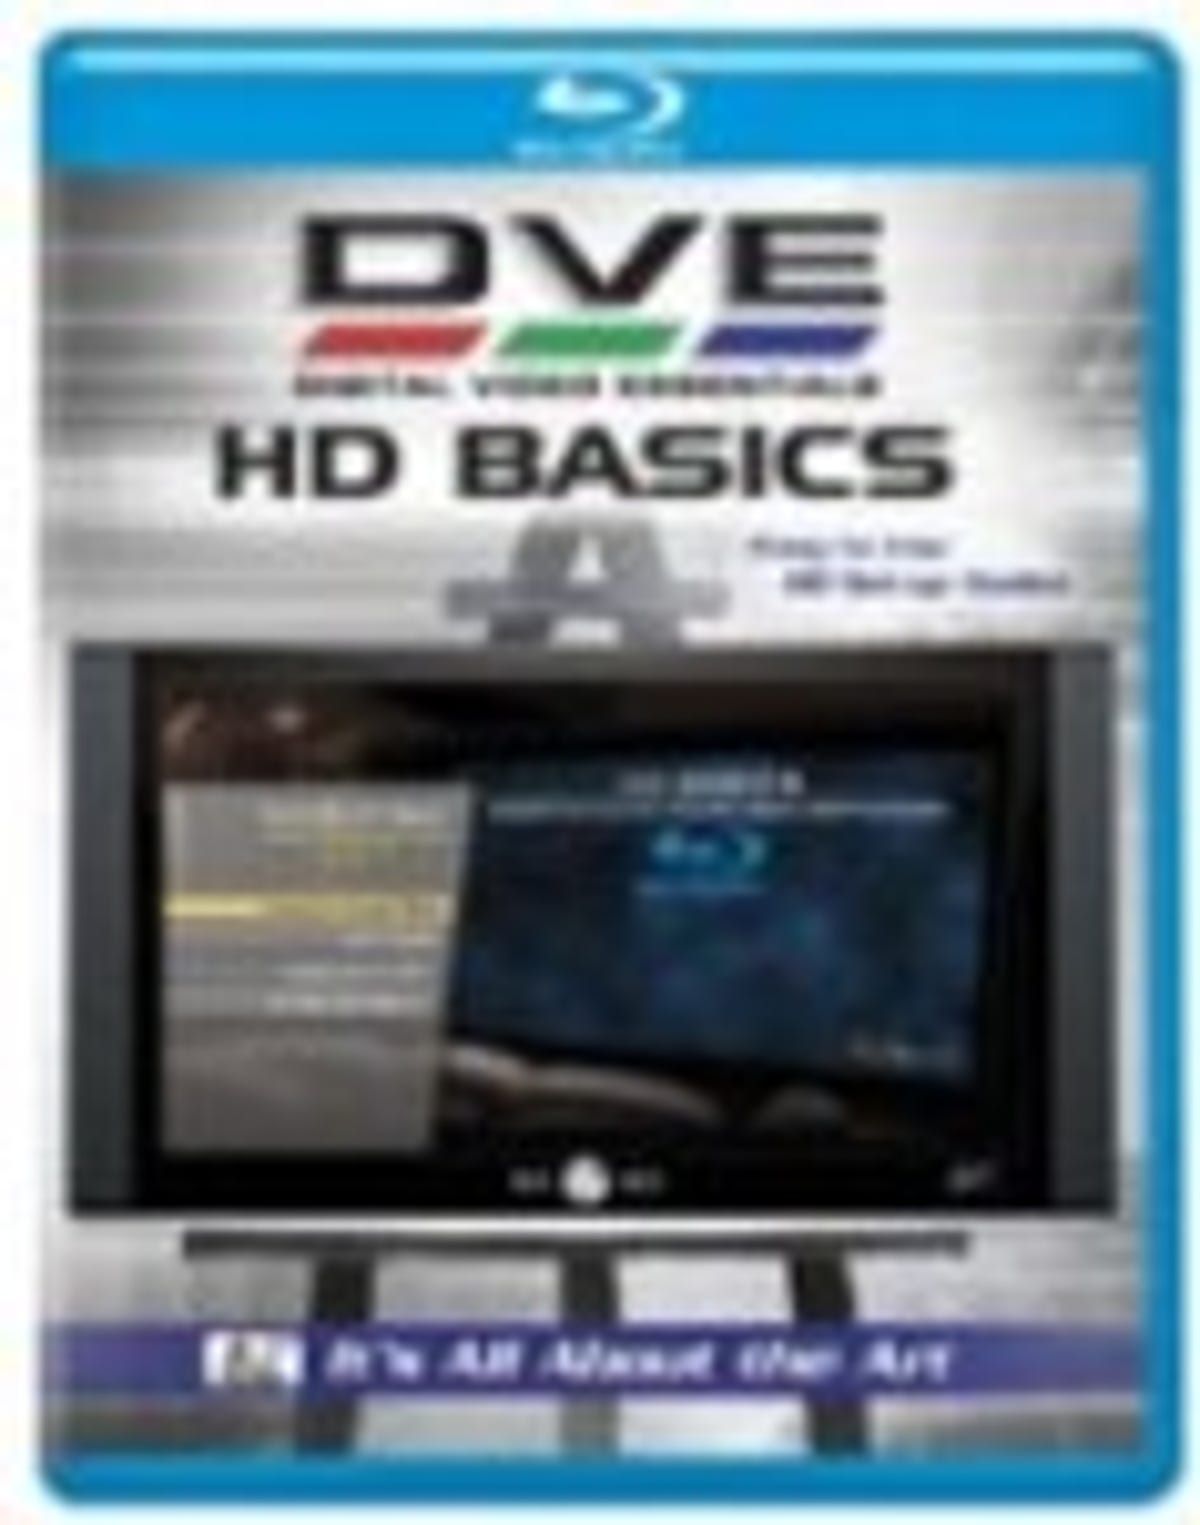 Digitial Video Essentials: HD Basics